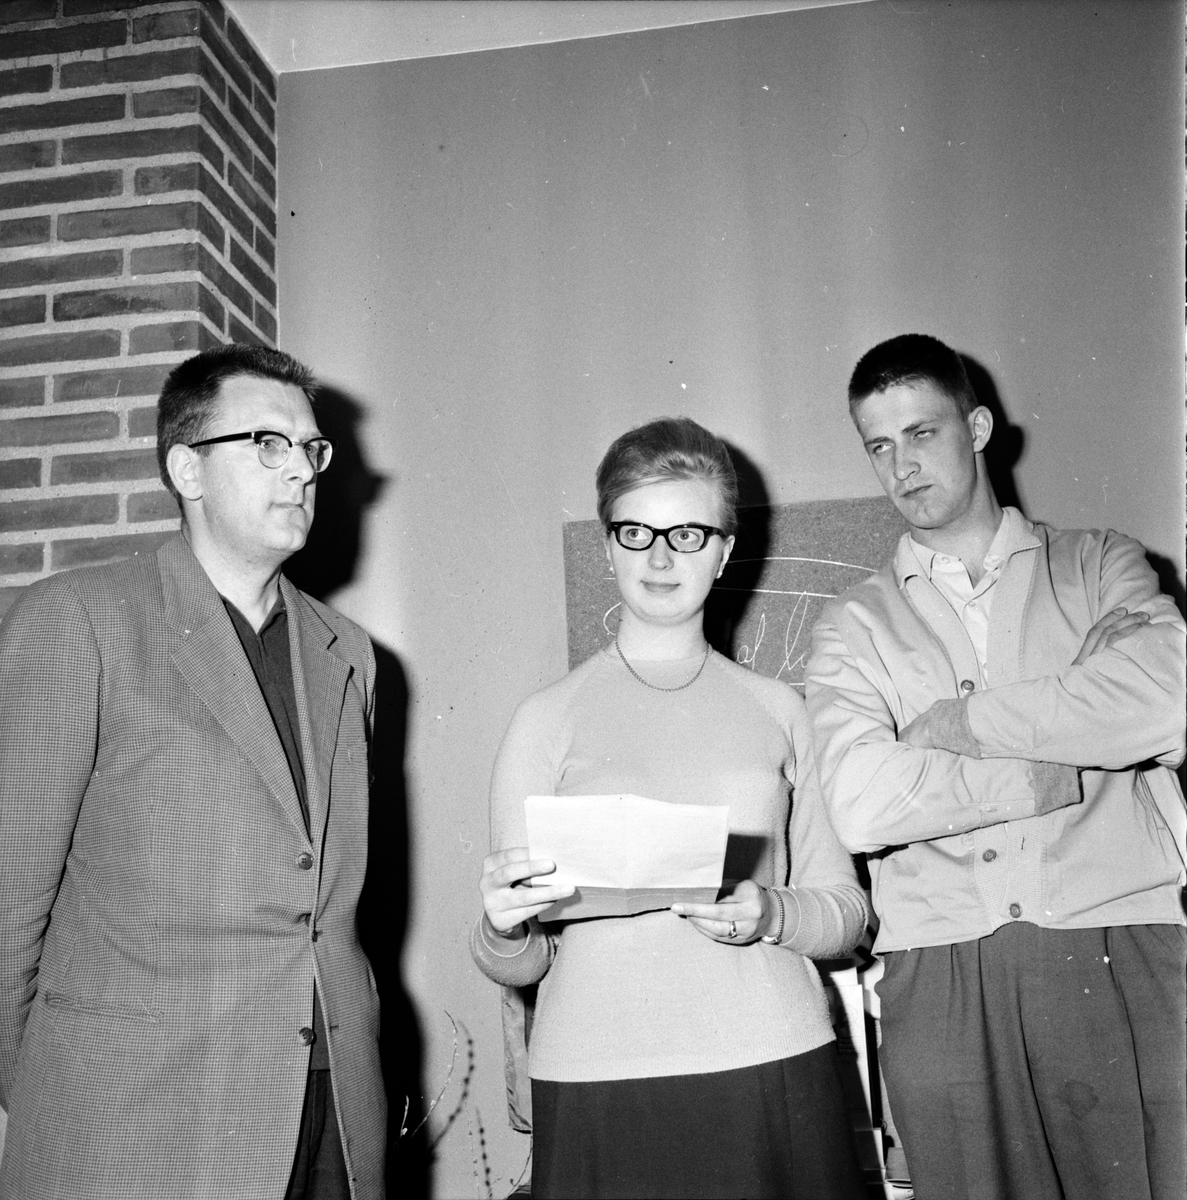 "Rök-tävlingen" Folkhögskolan,
Nilsson, Martinsson, Olofsson,
10 Maj 1963